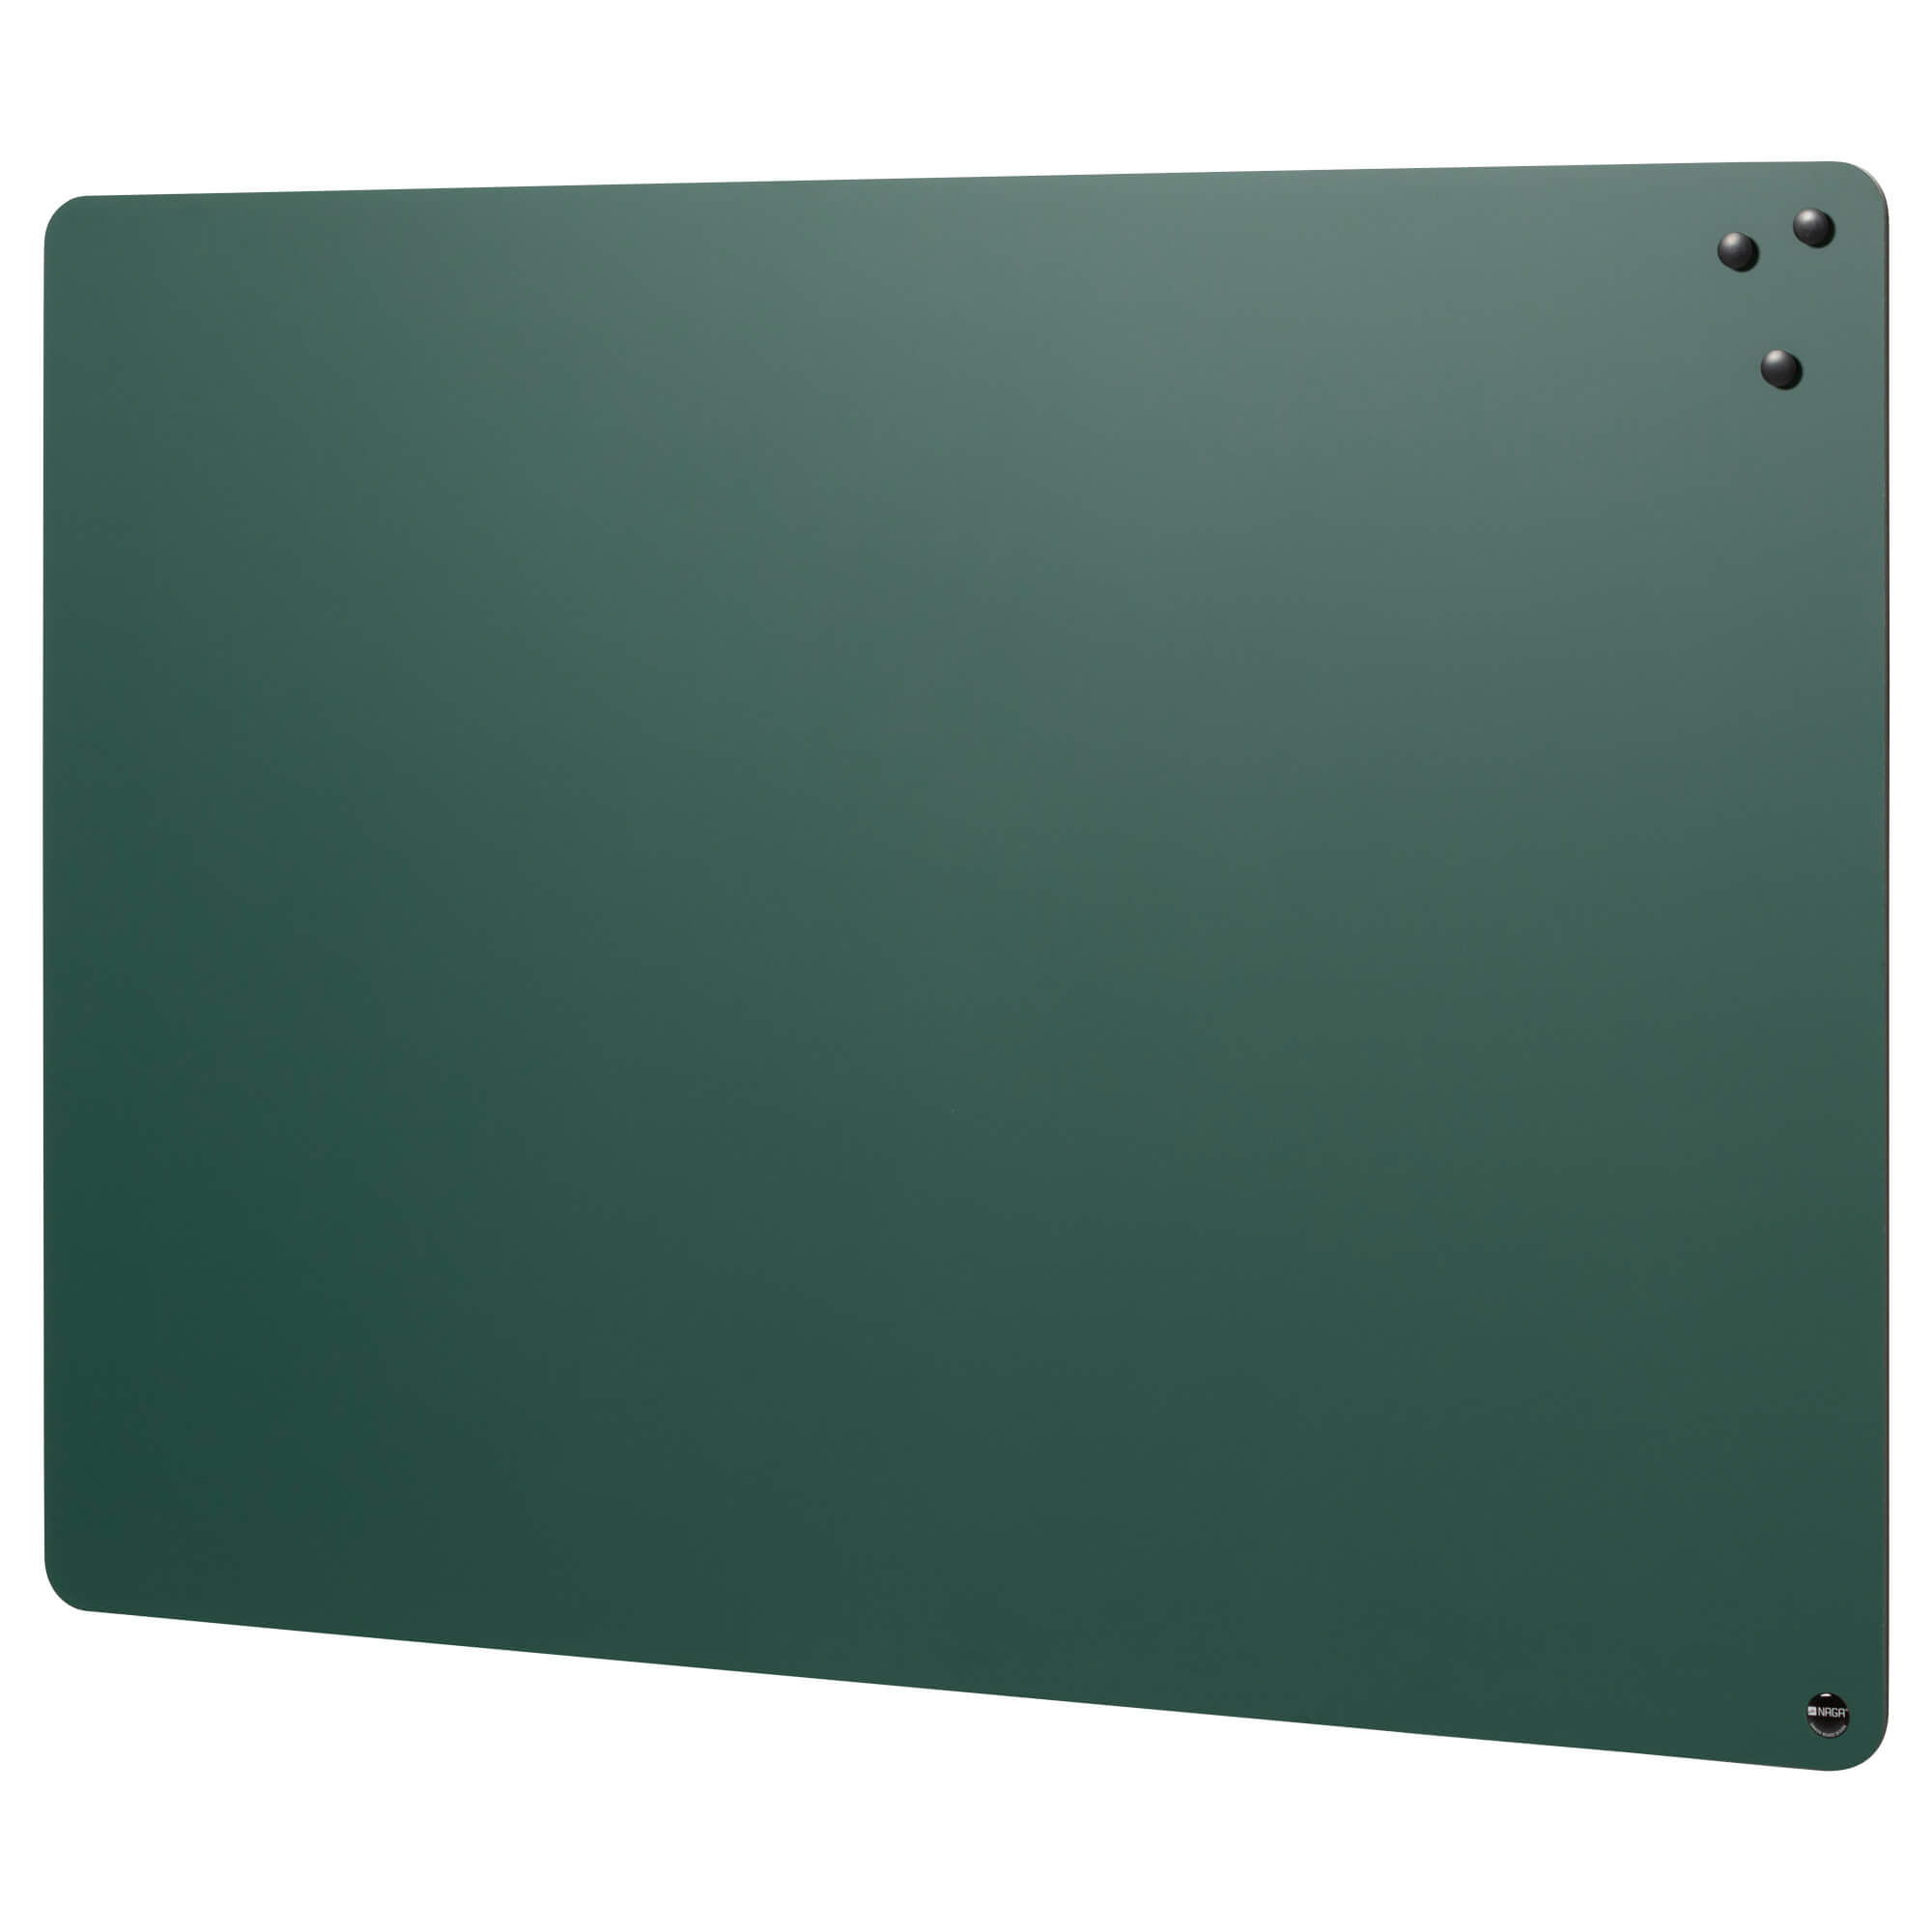 Se 117 x 87 cm. Magnetisk, grøn kridttavle uden ramme hos Naga.dk